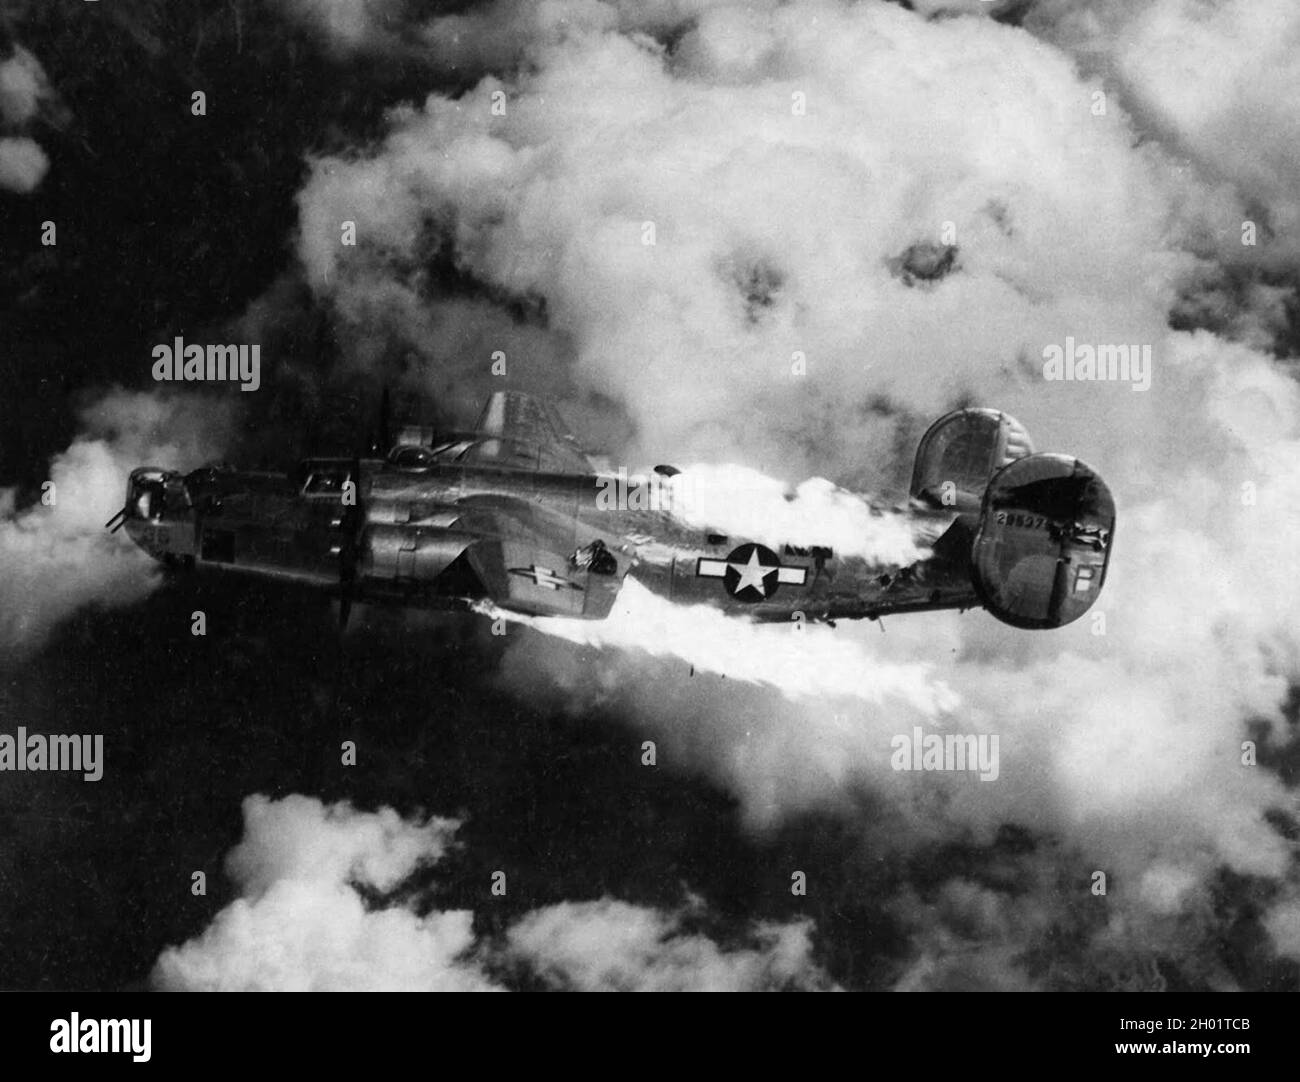 Un bombardier B-24 Liberator consolidé qui brûlait après avoir été frappé par un valaissement lors d'un raid. Banque D'Images